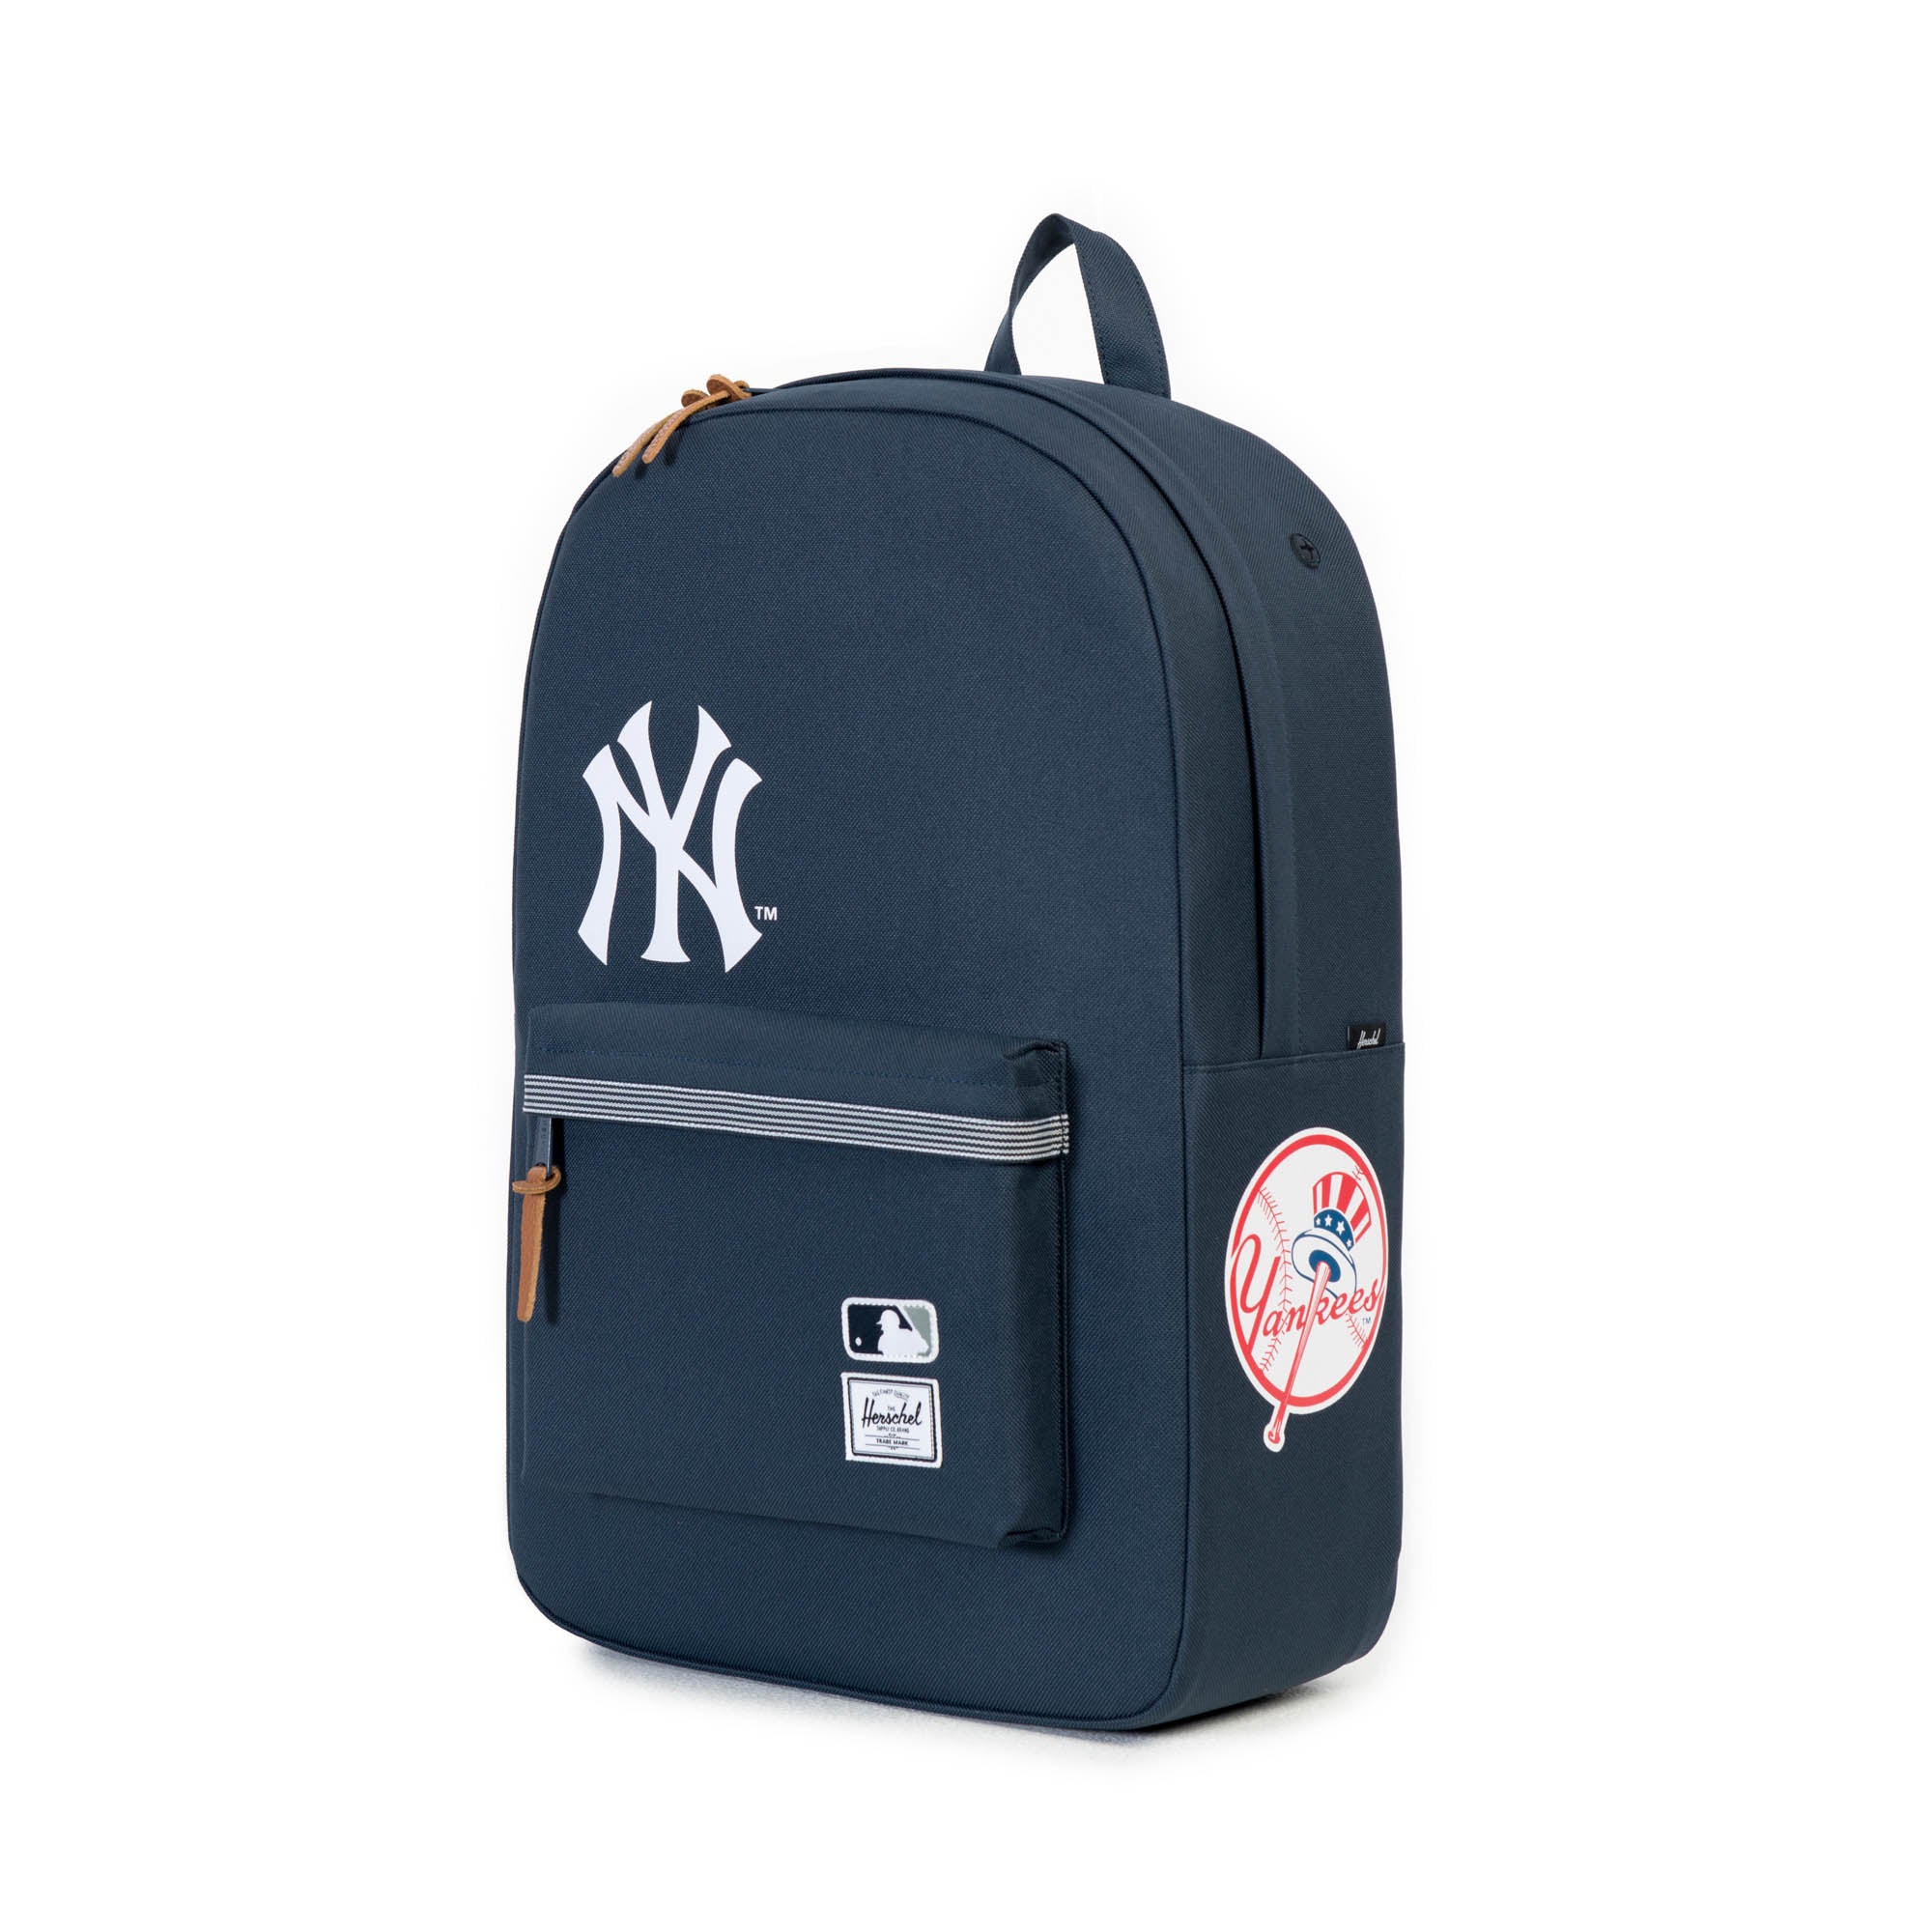 Major League Baseball Original New Yorkes Backpack / Backpack. Black and  white. Double inner pocket.